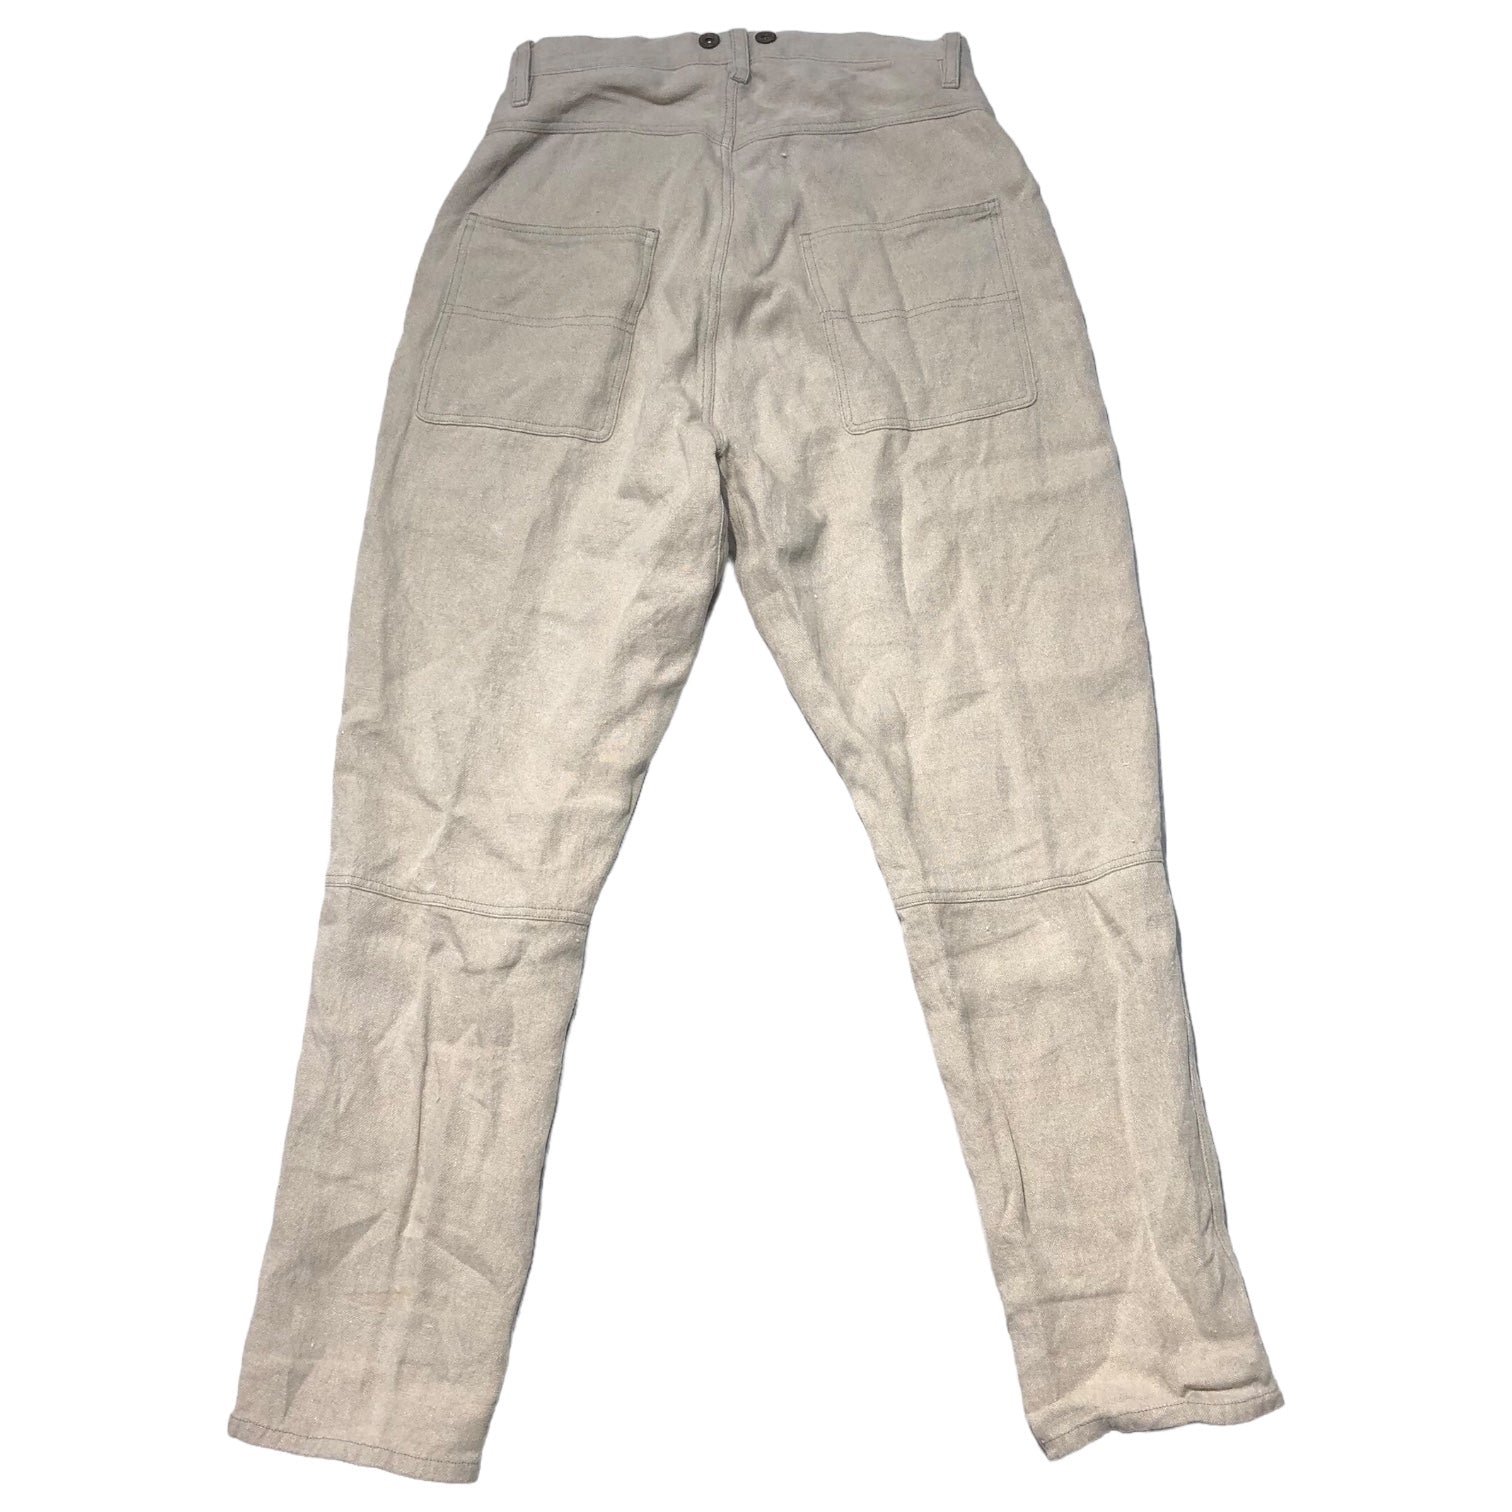 Vlas Blomme(ヴラスブラム) linen pants コルト パンツ コルトレイクリネン 133041 1(S) ベージュ